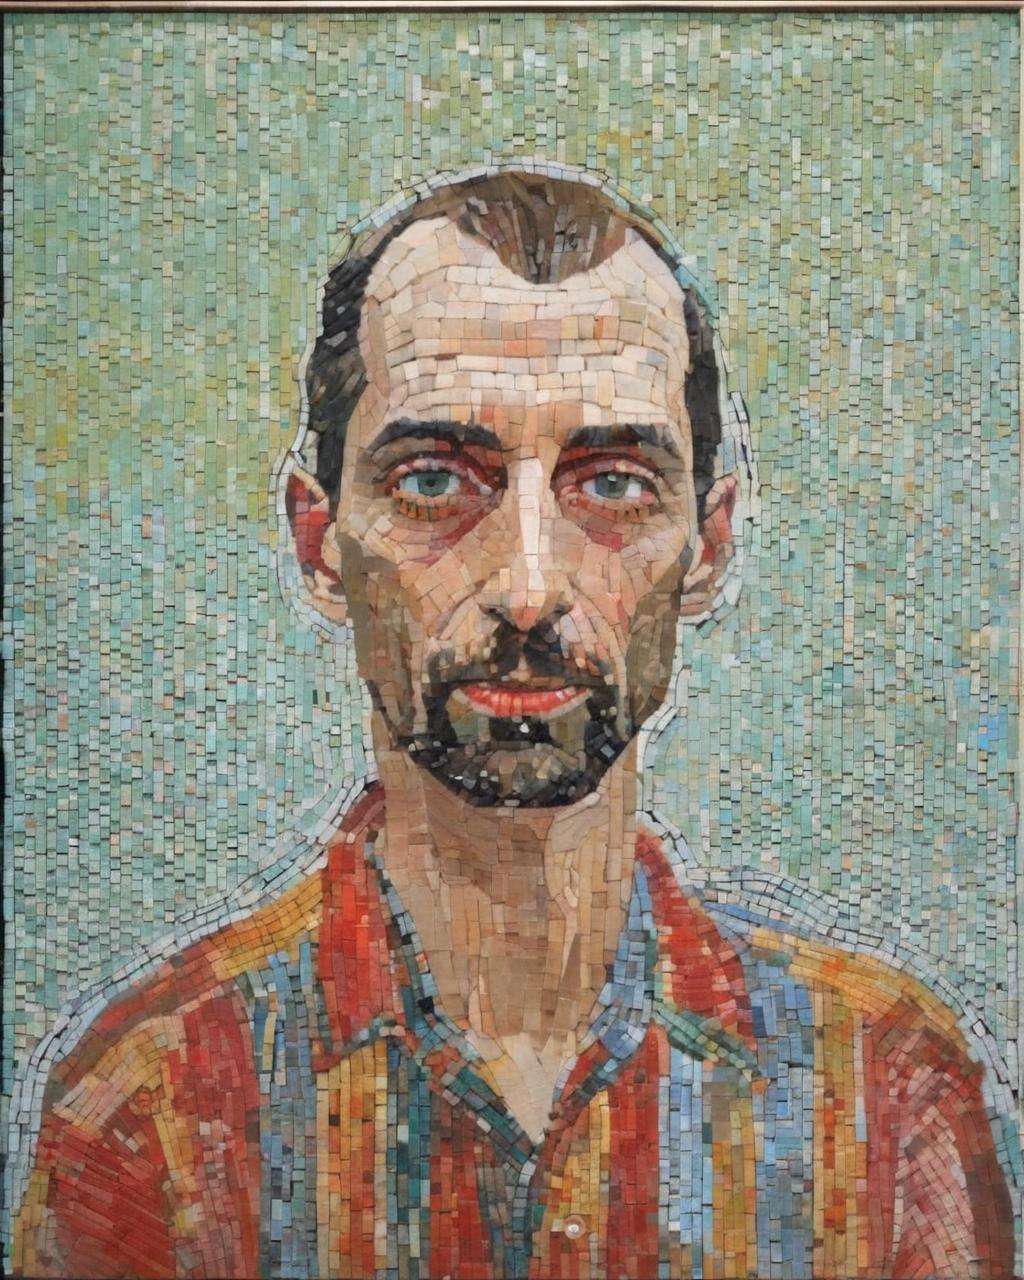 mosaic of  an art portrait , Peter Doig, Loie Hollowell<lora:mosaic:1.0>